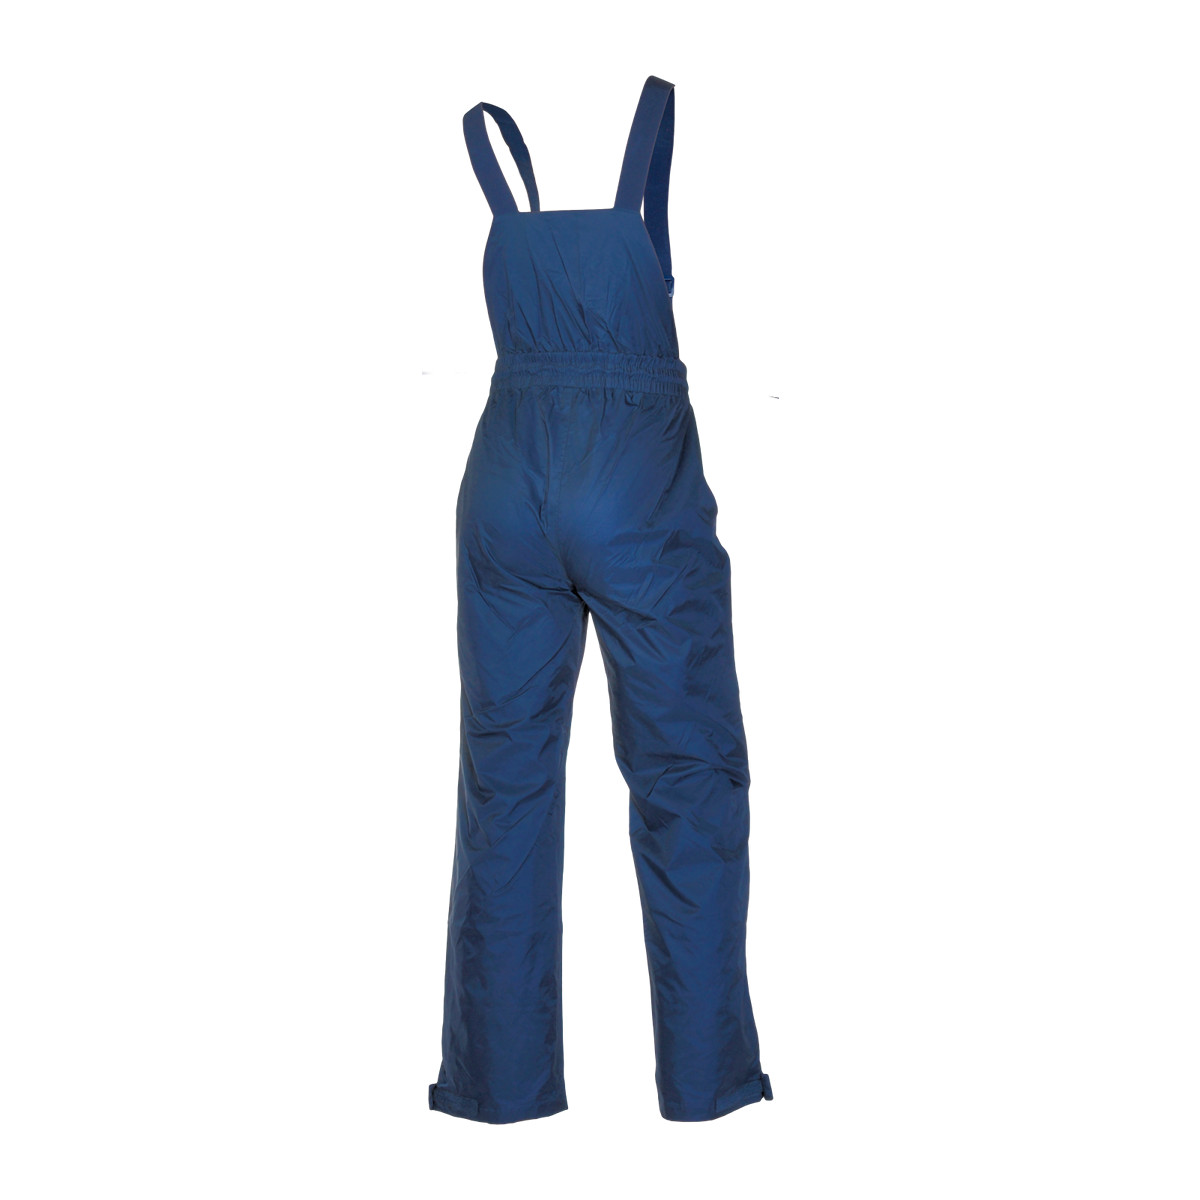 Dry Fashion Baltic Crew pantalon de voile unisexe bleu marine, taille XXL